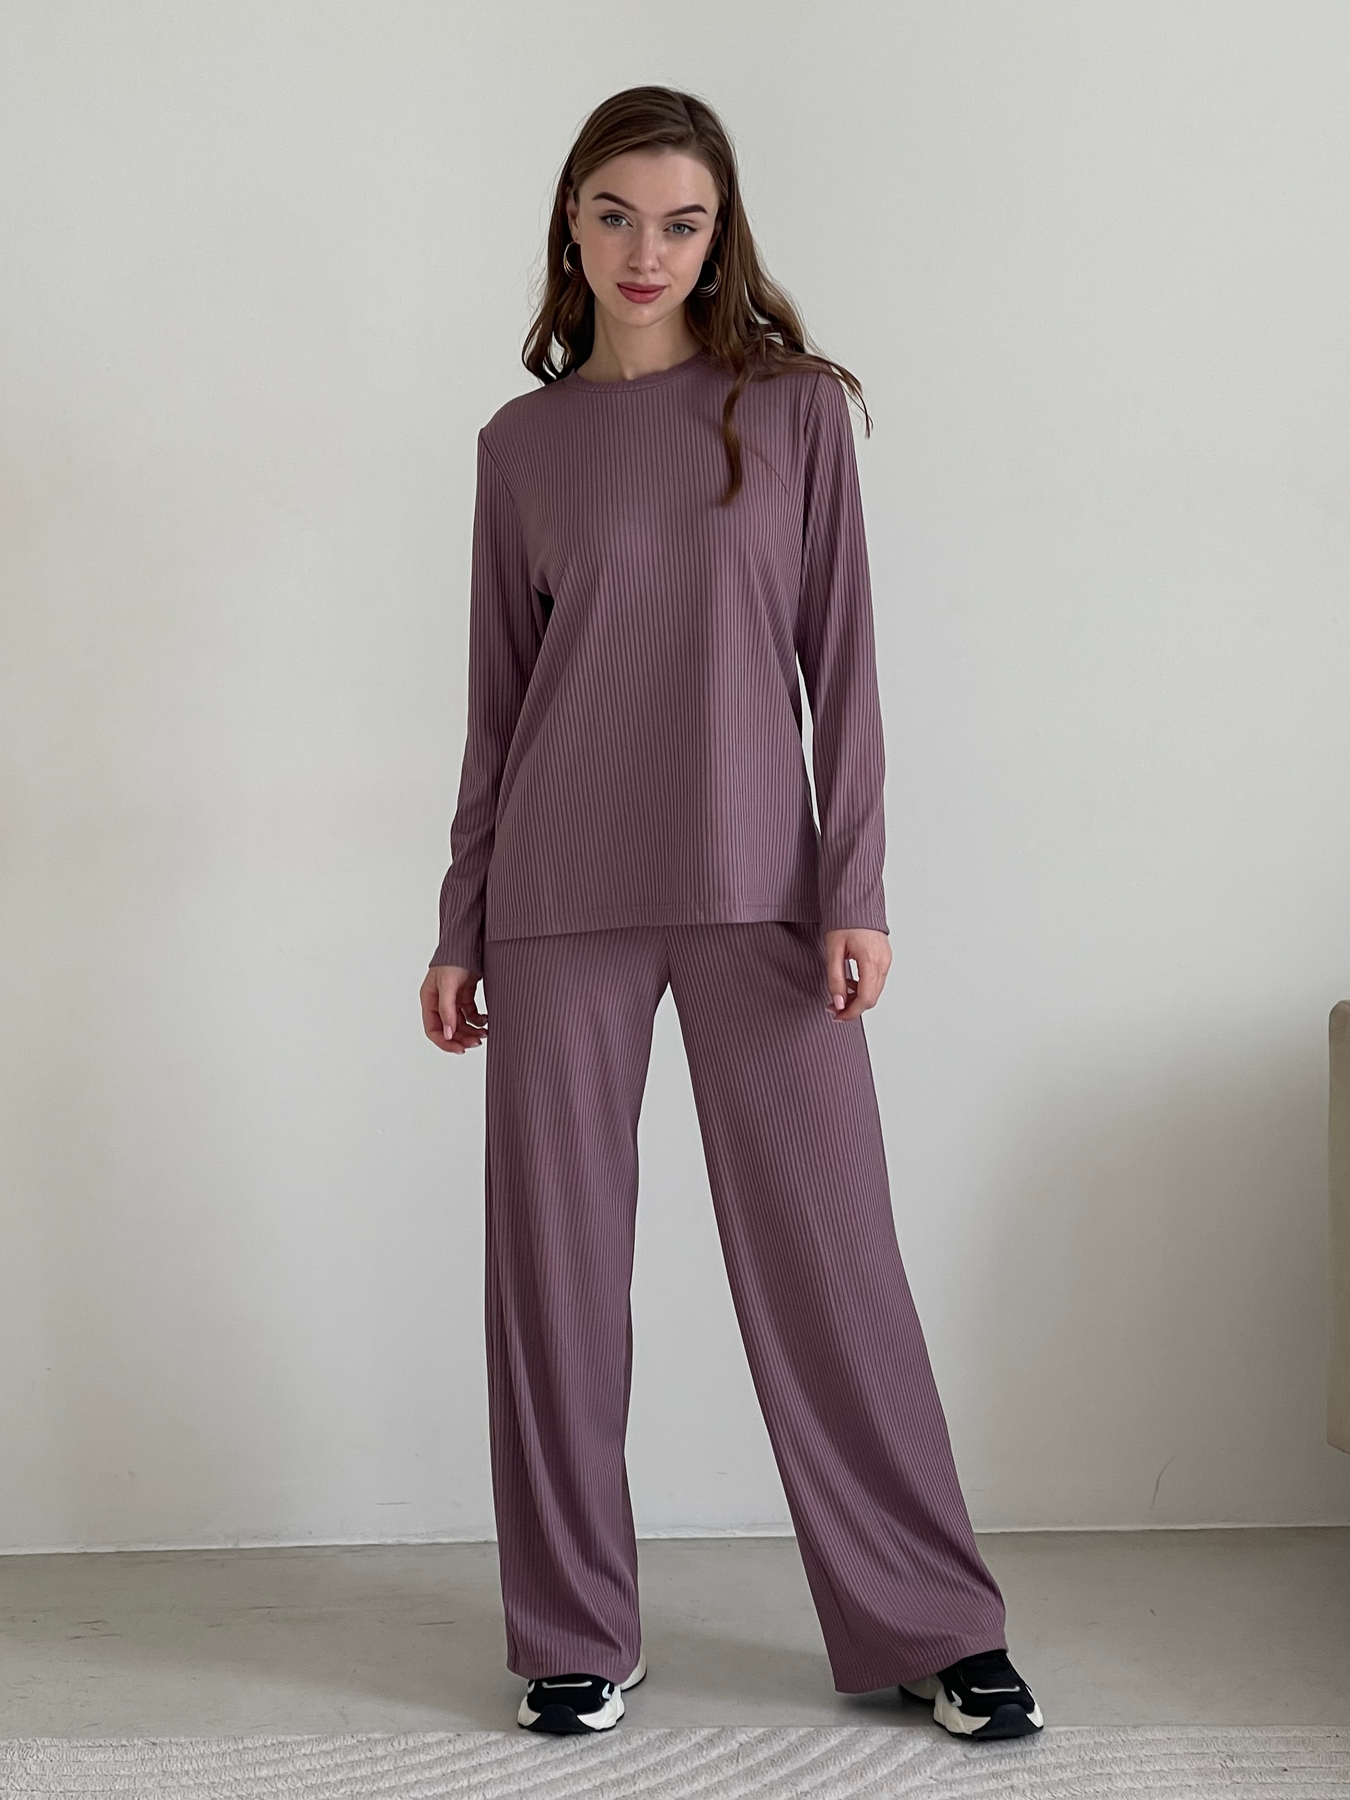 Купить Костюм с широкими брюками в рубчик фиолетовый Merlini Менто 100001162, размер 46-48 (L-XL) в интернет-магазине